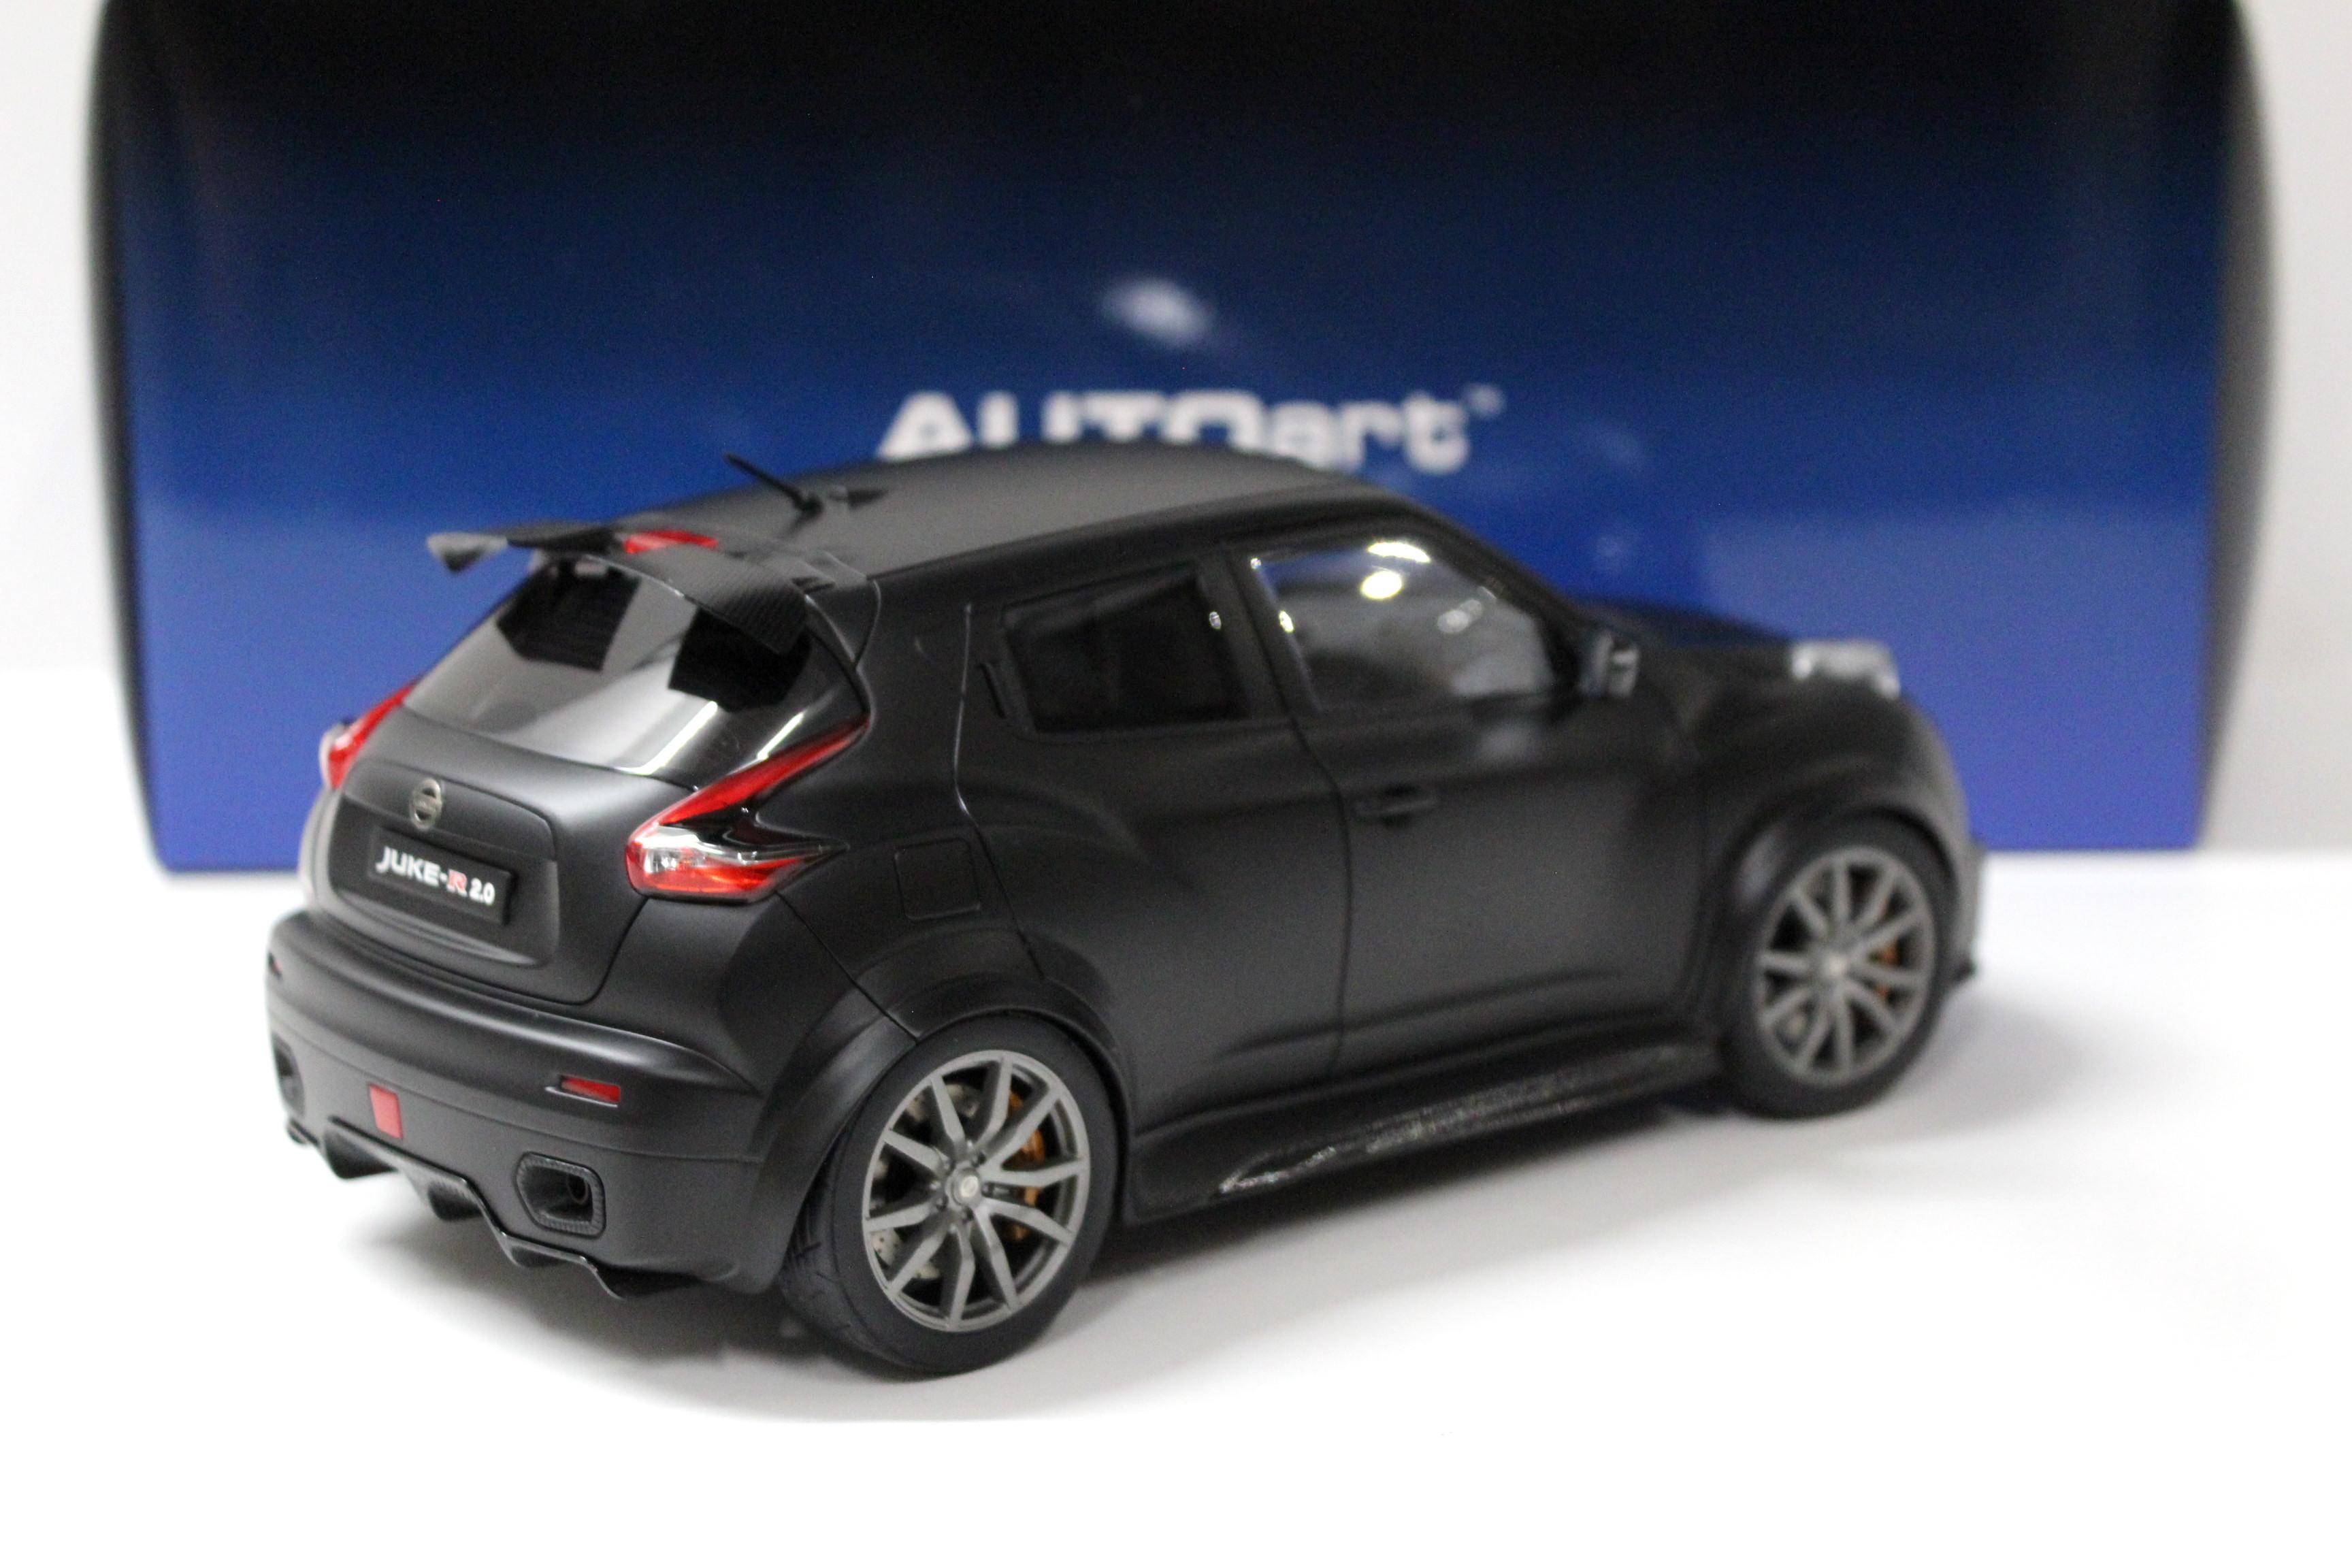 1:18 AUTOart Nissan Juke R 2.0 matt black 2016